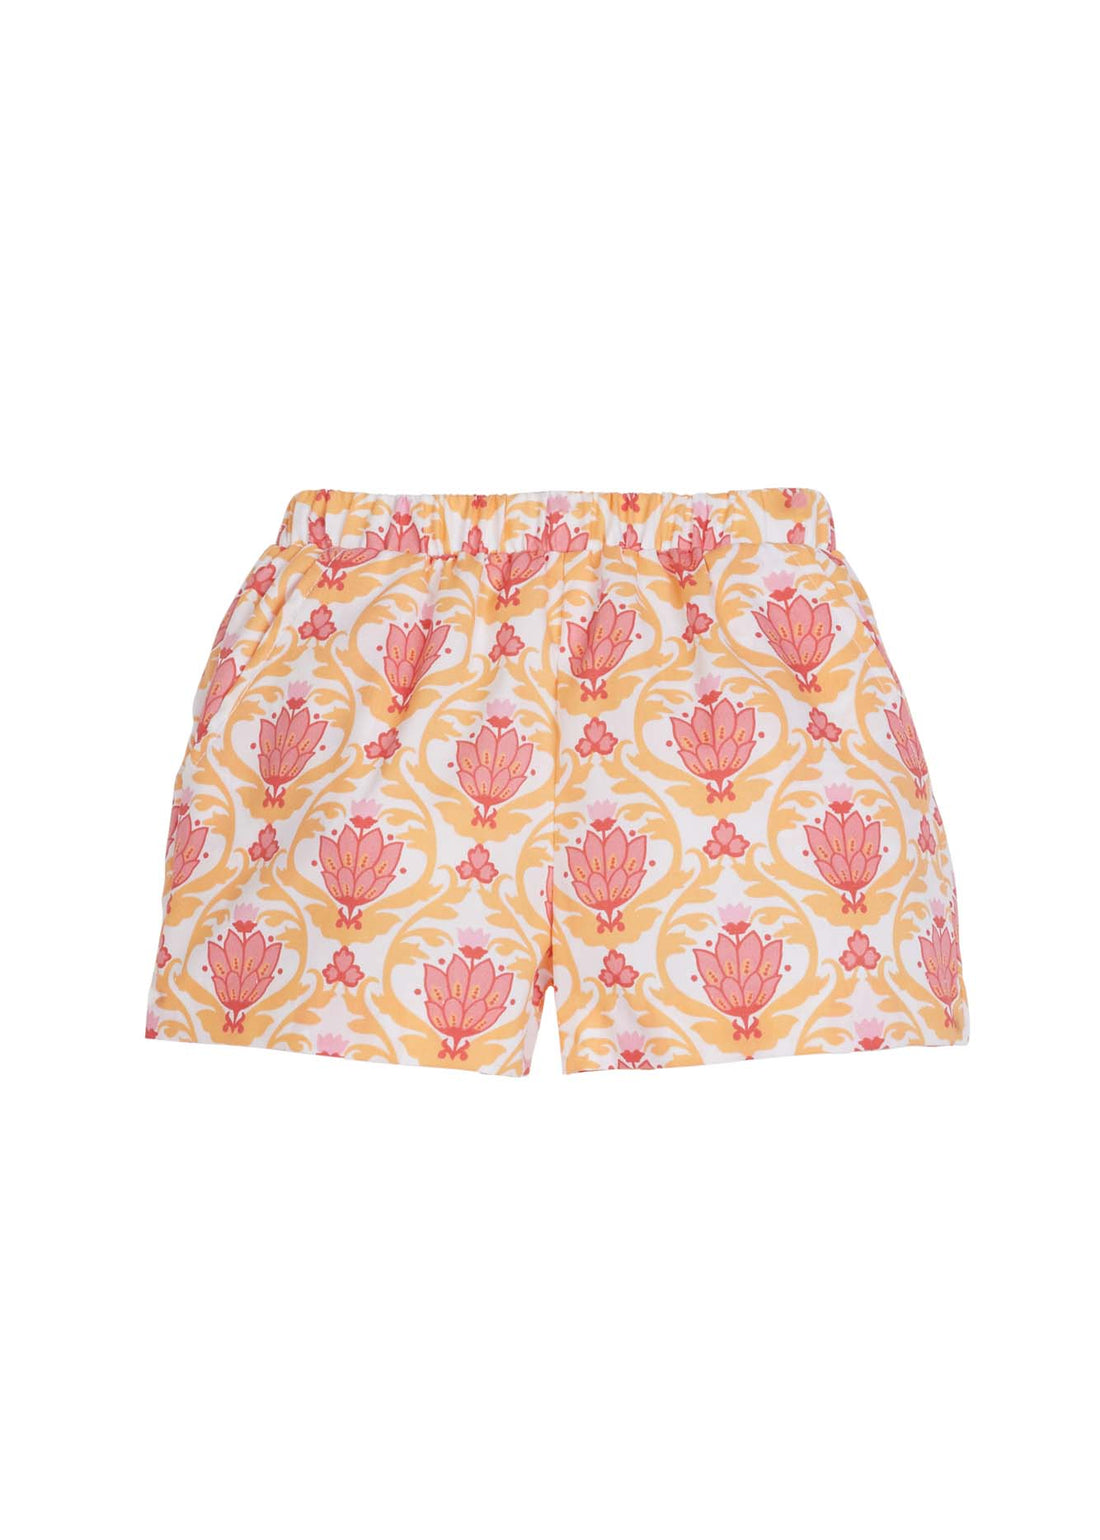 Basic Shorts - Coral Lotus Blossom